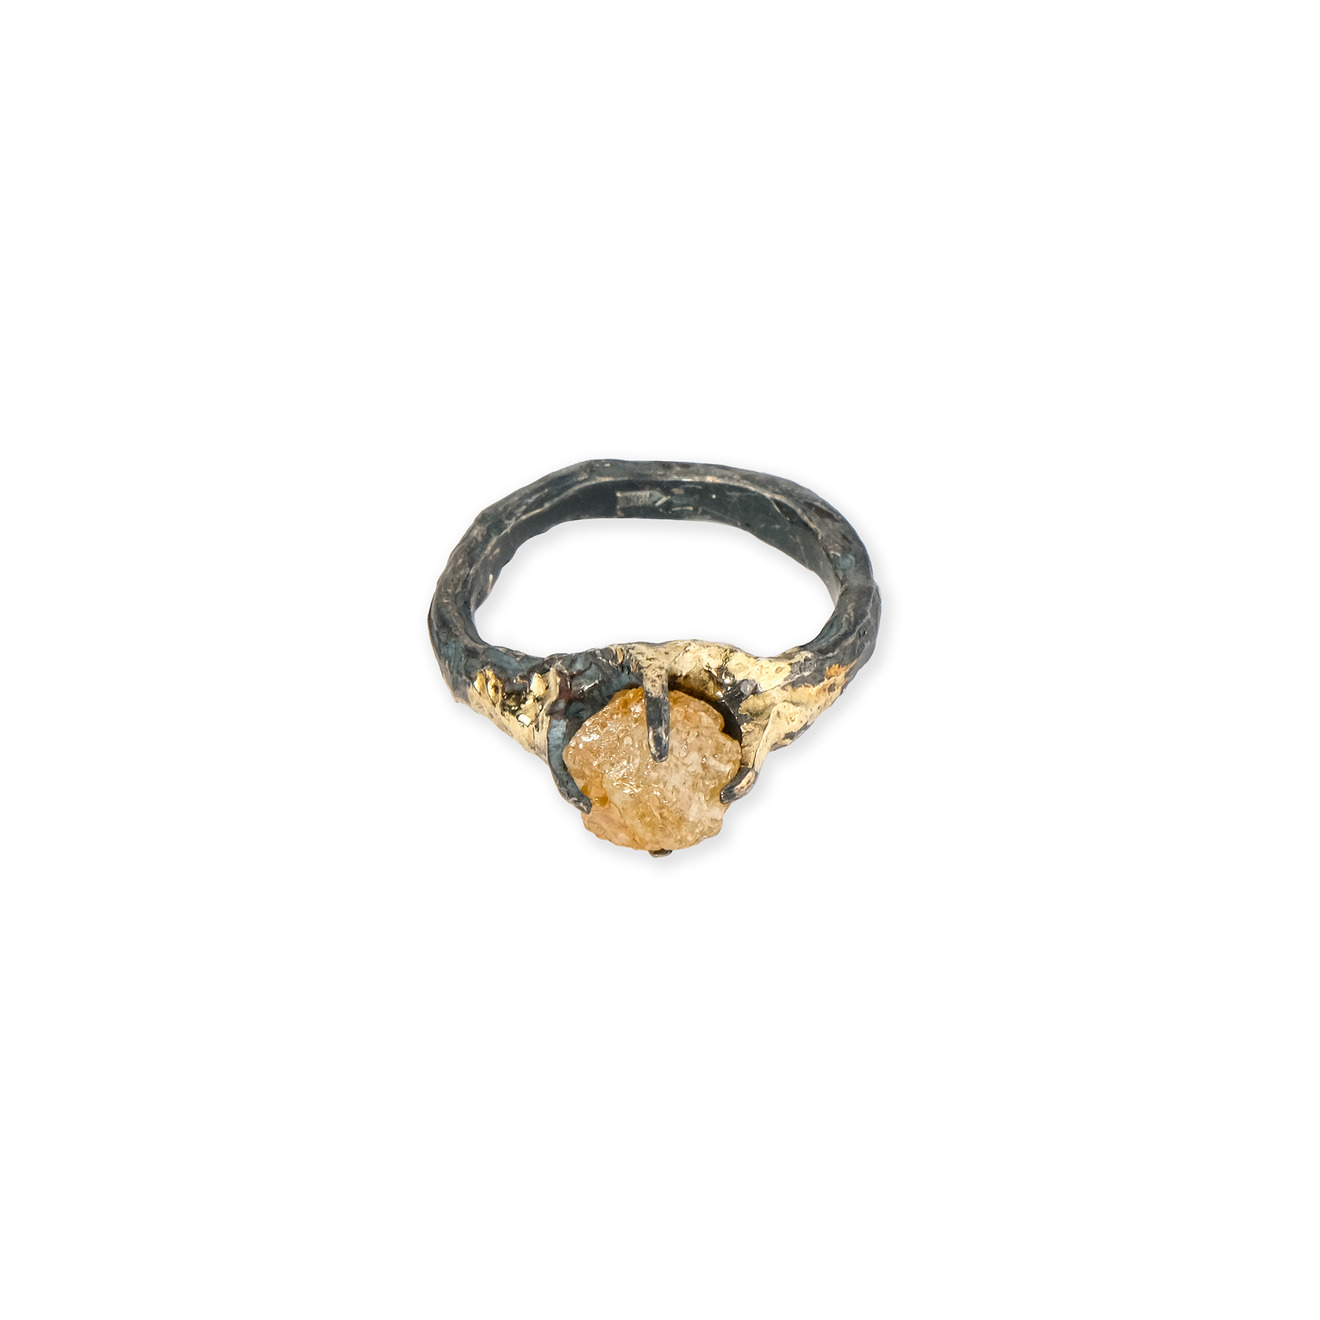 Kintsugi Jewelry Кольцо Wild power из серебра с позолотой и кристаллом кварца